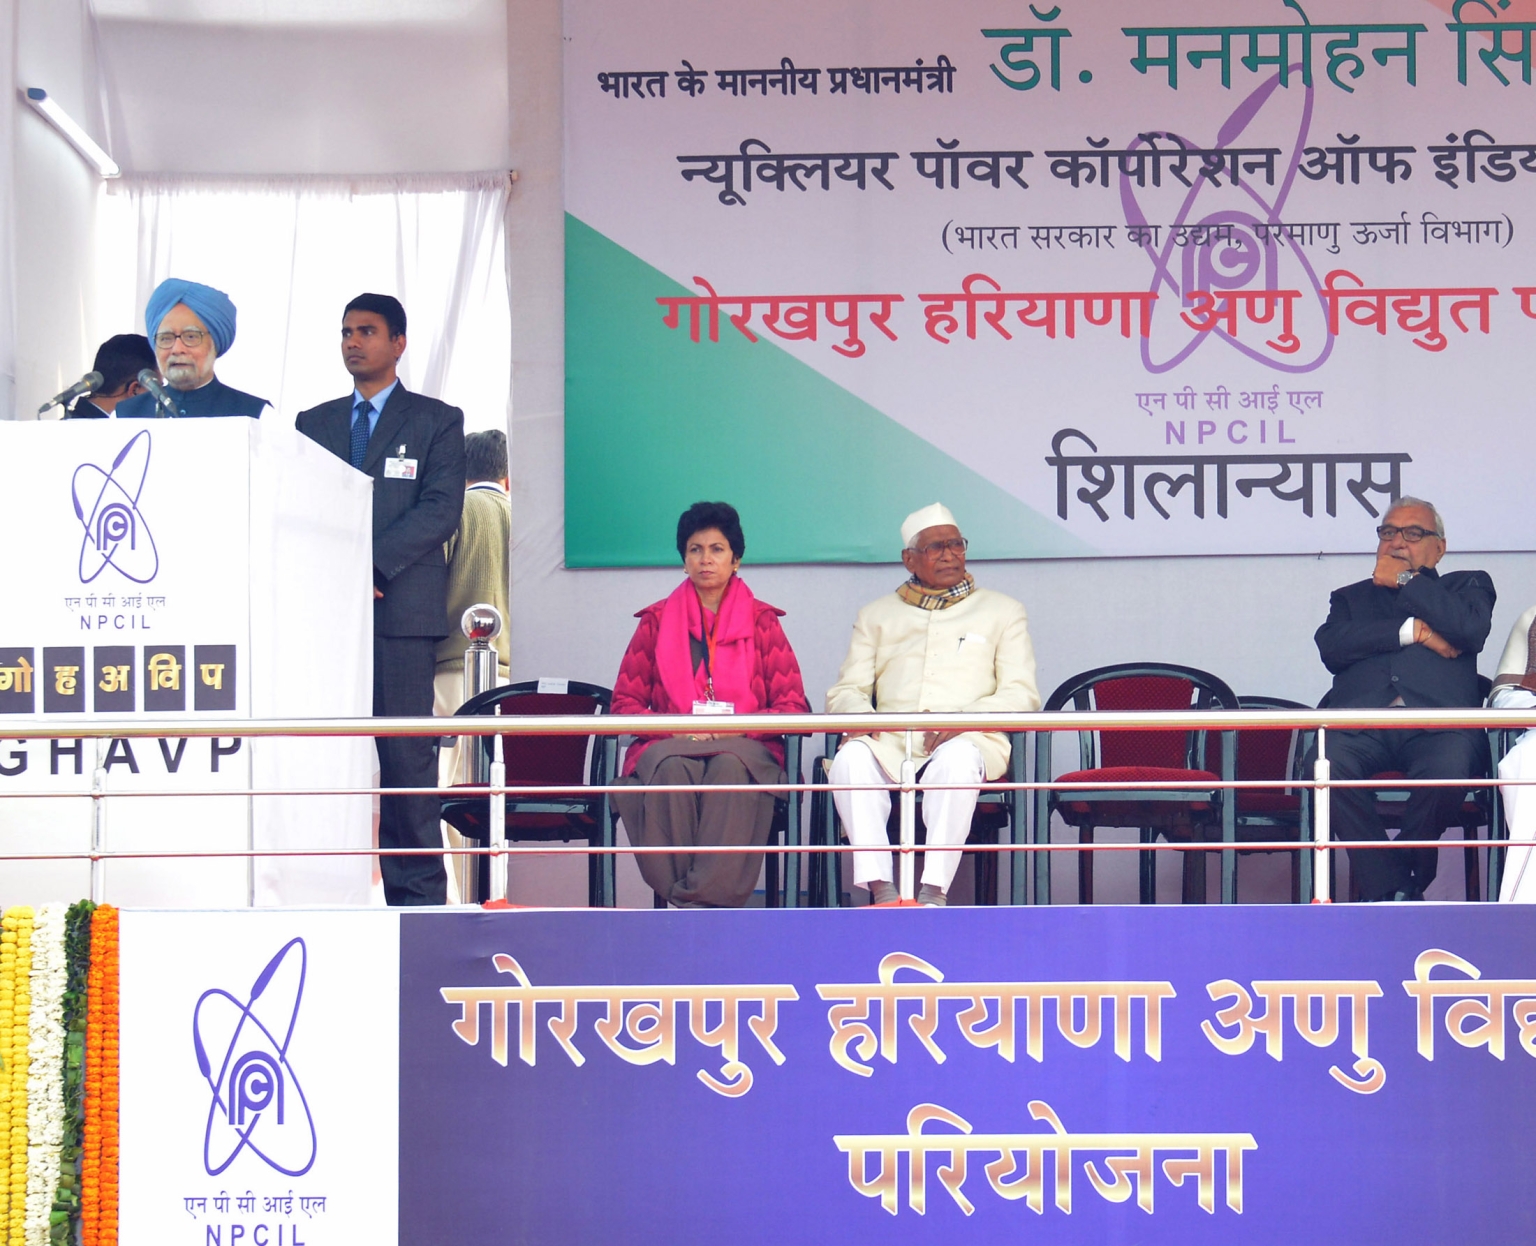 Lors de la pose de la première pierre de la nouvelle centrale nucléaire Gorakhpur Haryana Anu Vidyut Pariyojana (GHAVP), le Premier ministre indien Manmohan Singh a déclaré: «L’Inde a aujourd’hui une puissance nucléaire installée de 4800 MW. Nous espérons que notre pays atteindra d’ici dix ans une puissance supérieure à 27'000 MW.»